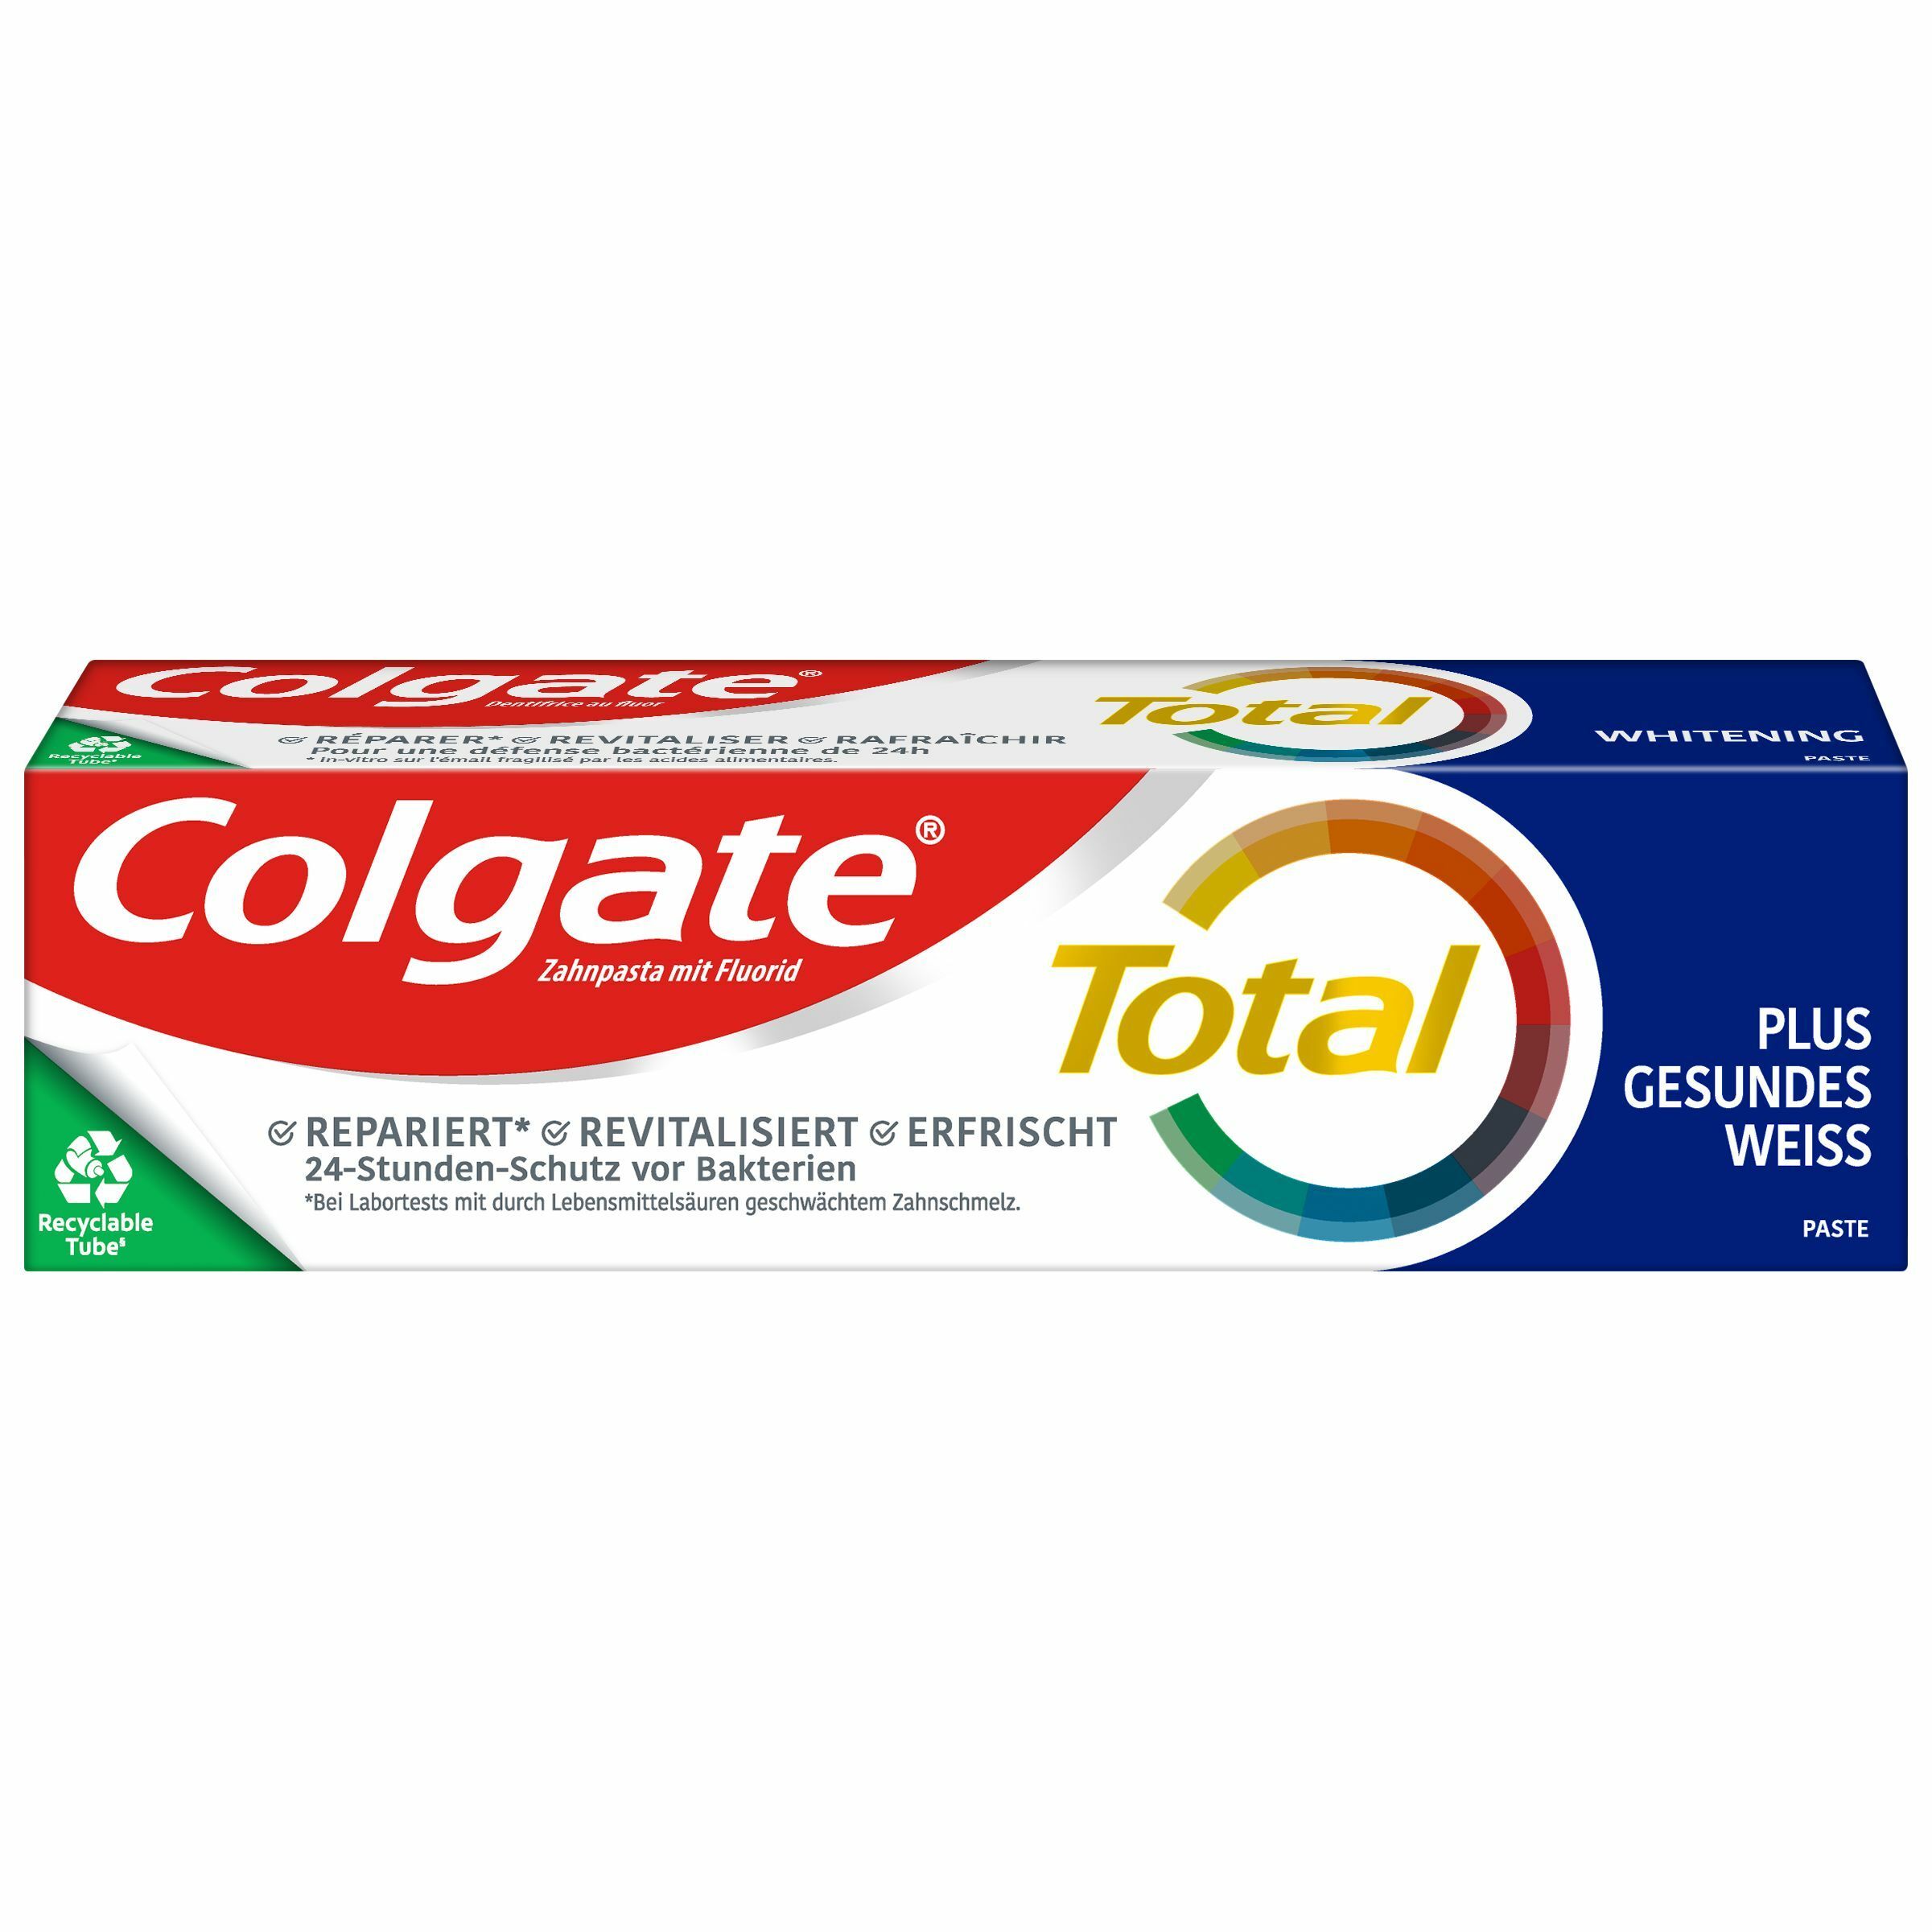 Colgate Total Plus Gesundes Weiß